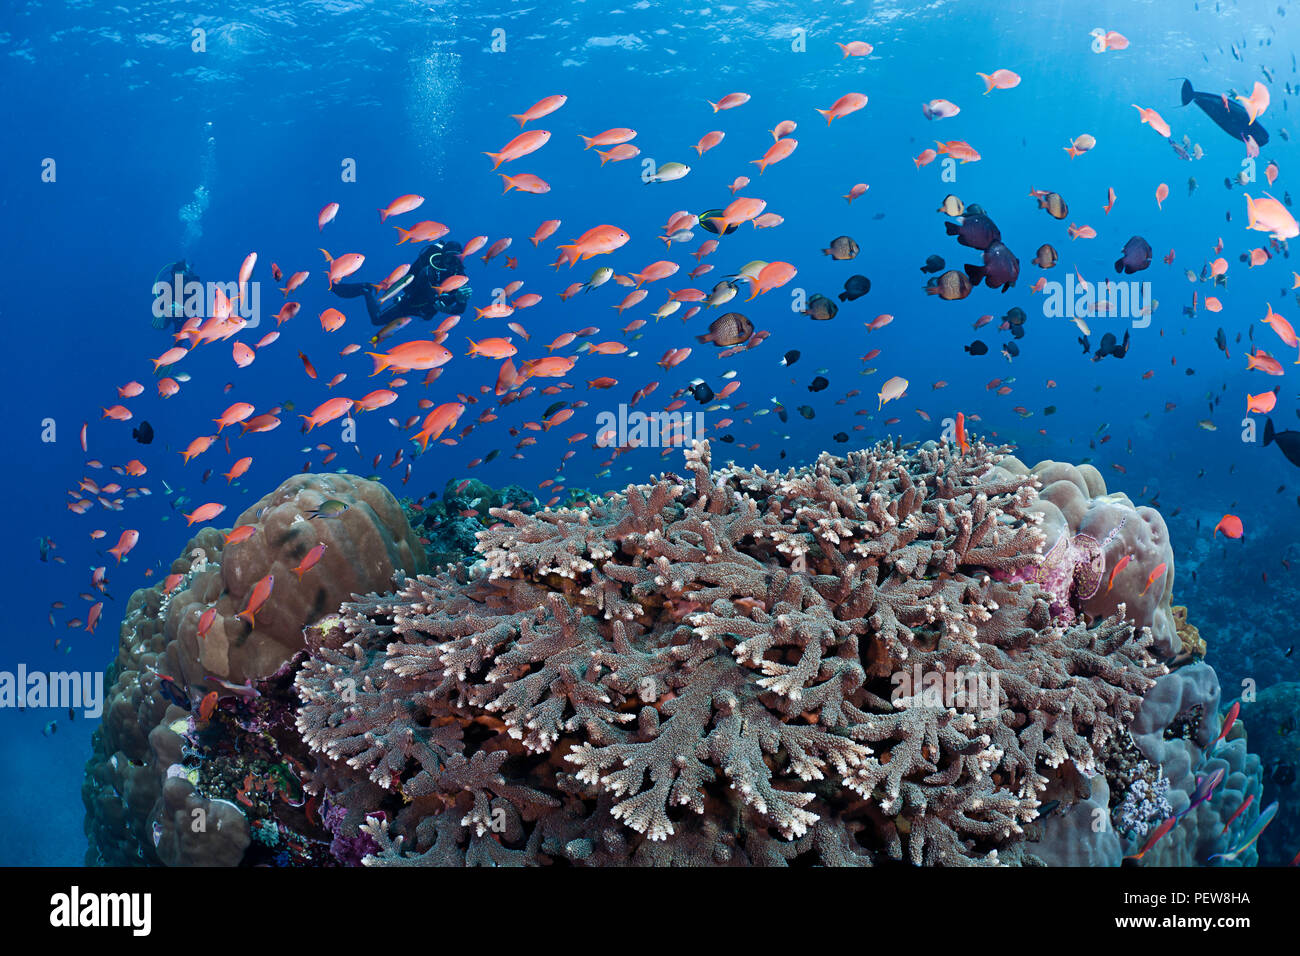 Coraux durs, la scolarisation anthias et autres poissons de récifs coralliens indonésiens dominent cette scène avec divers (MR), Crystal Bay, Nusa Penida, île de Bali, Indonésie Banque D'Images